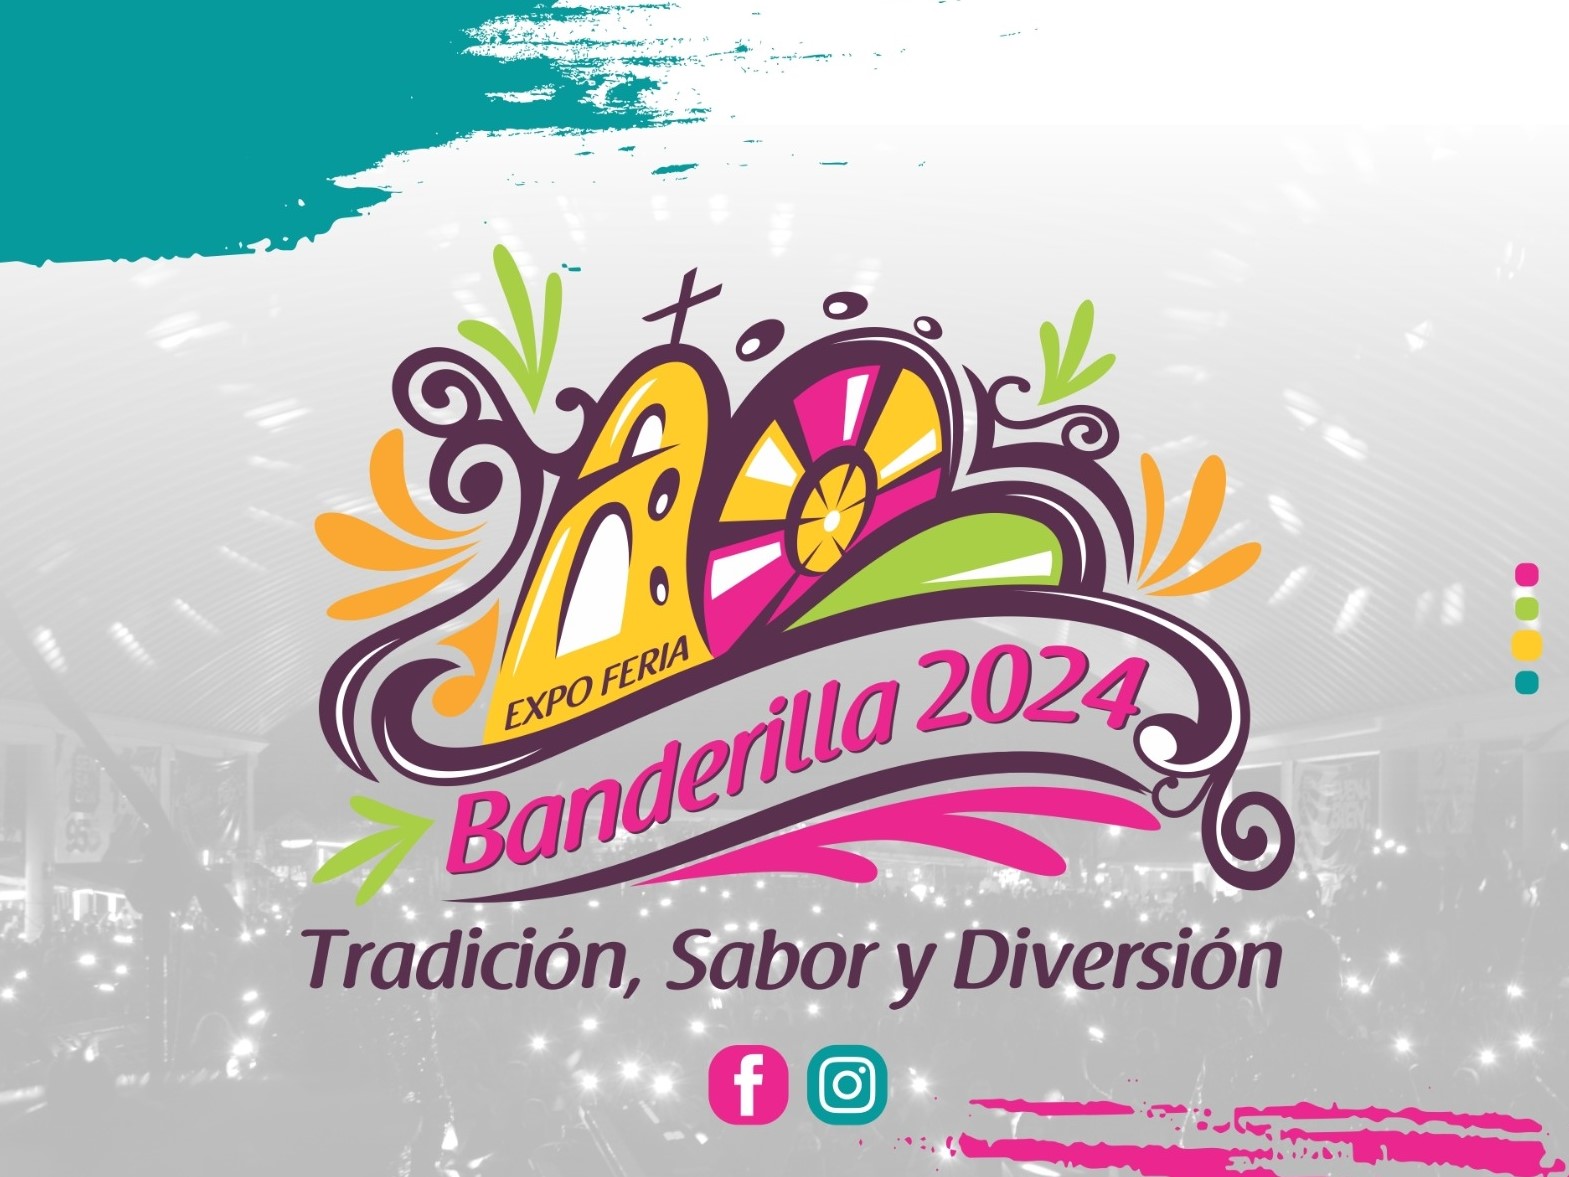 Expo Feria de Banderilla 2024 del 11 al 28 de abril